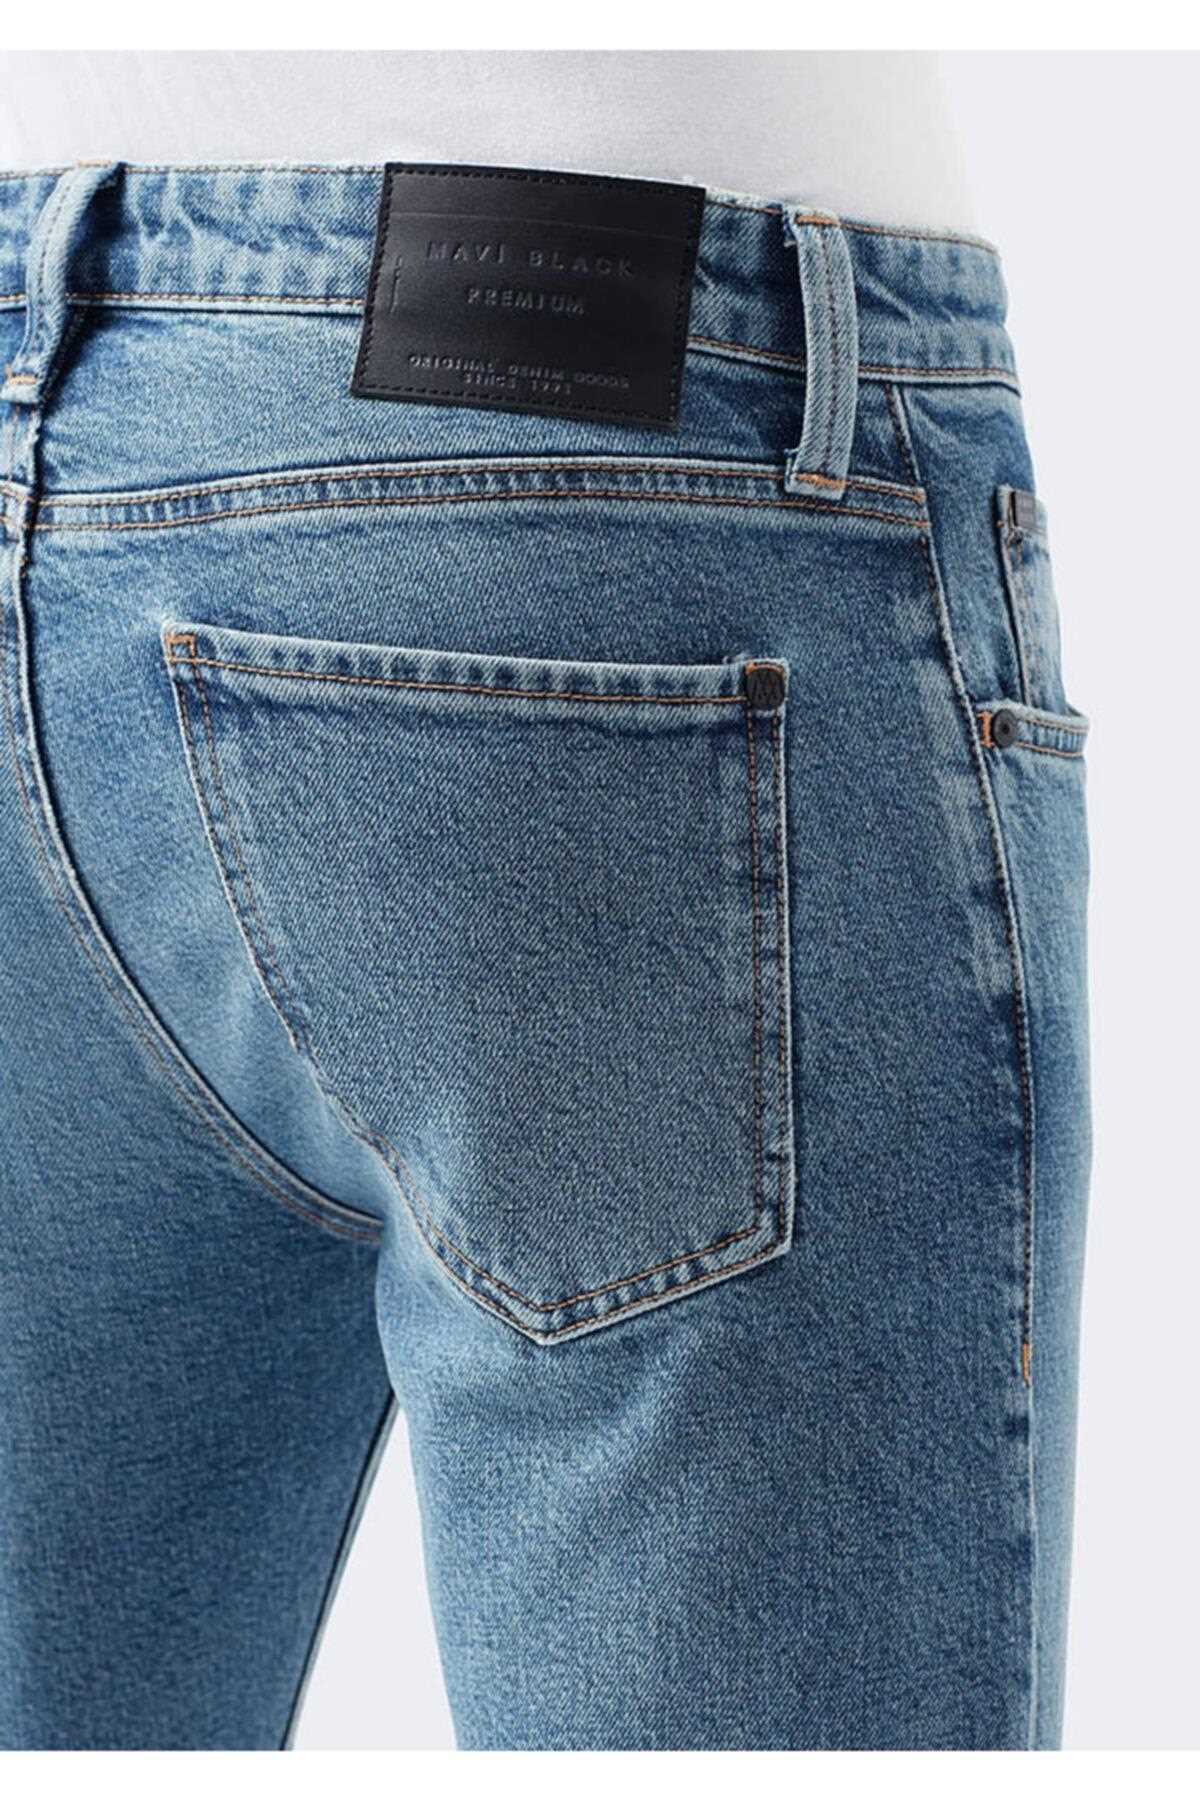 خرید اینترنتی شلوار جین مردانه از استانبول برند ماوی آبی ty213430444